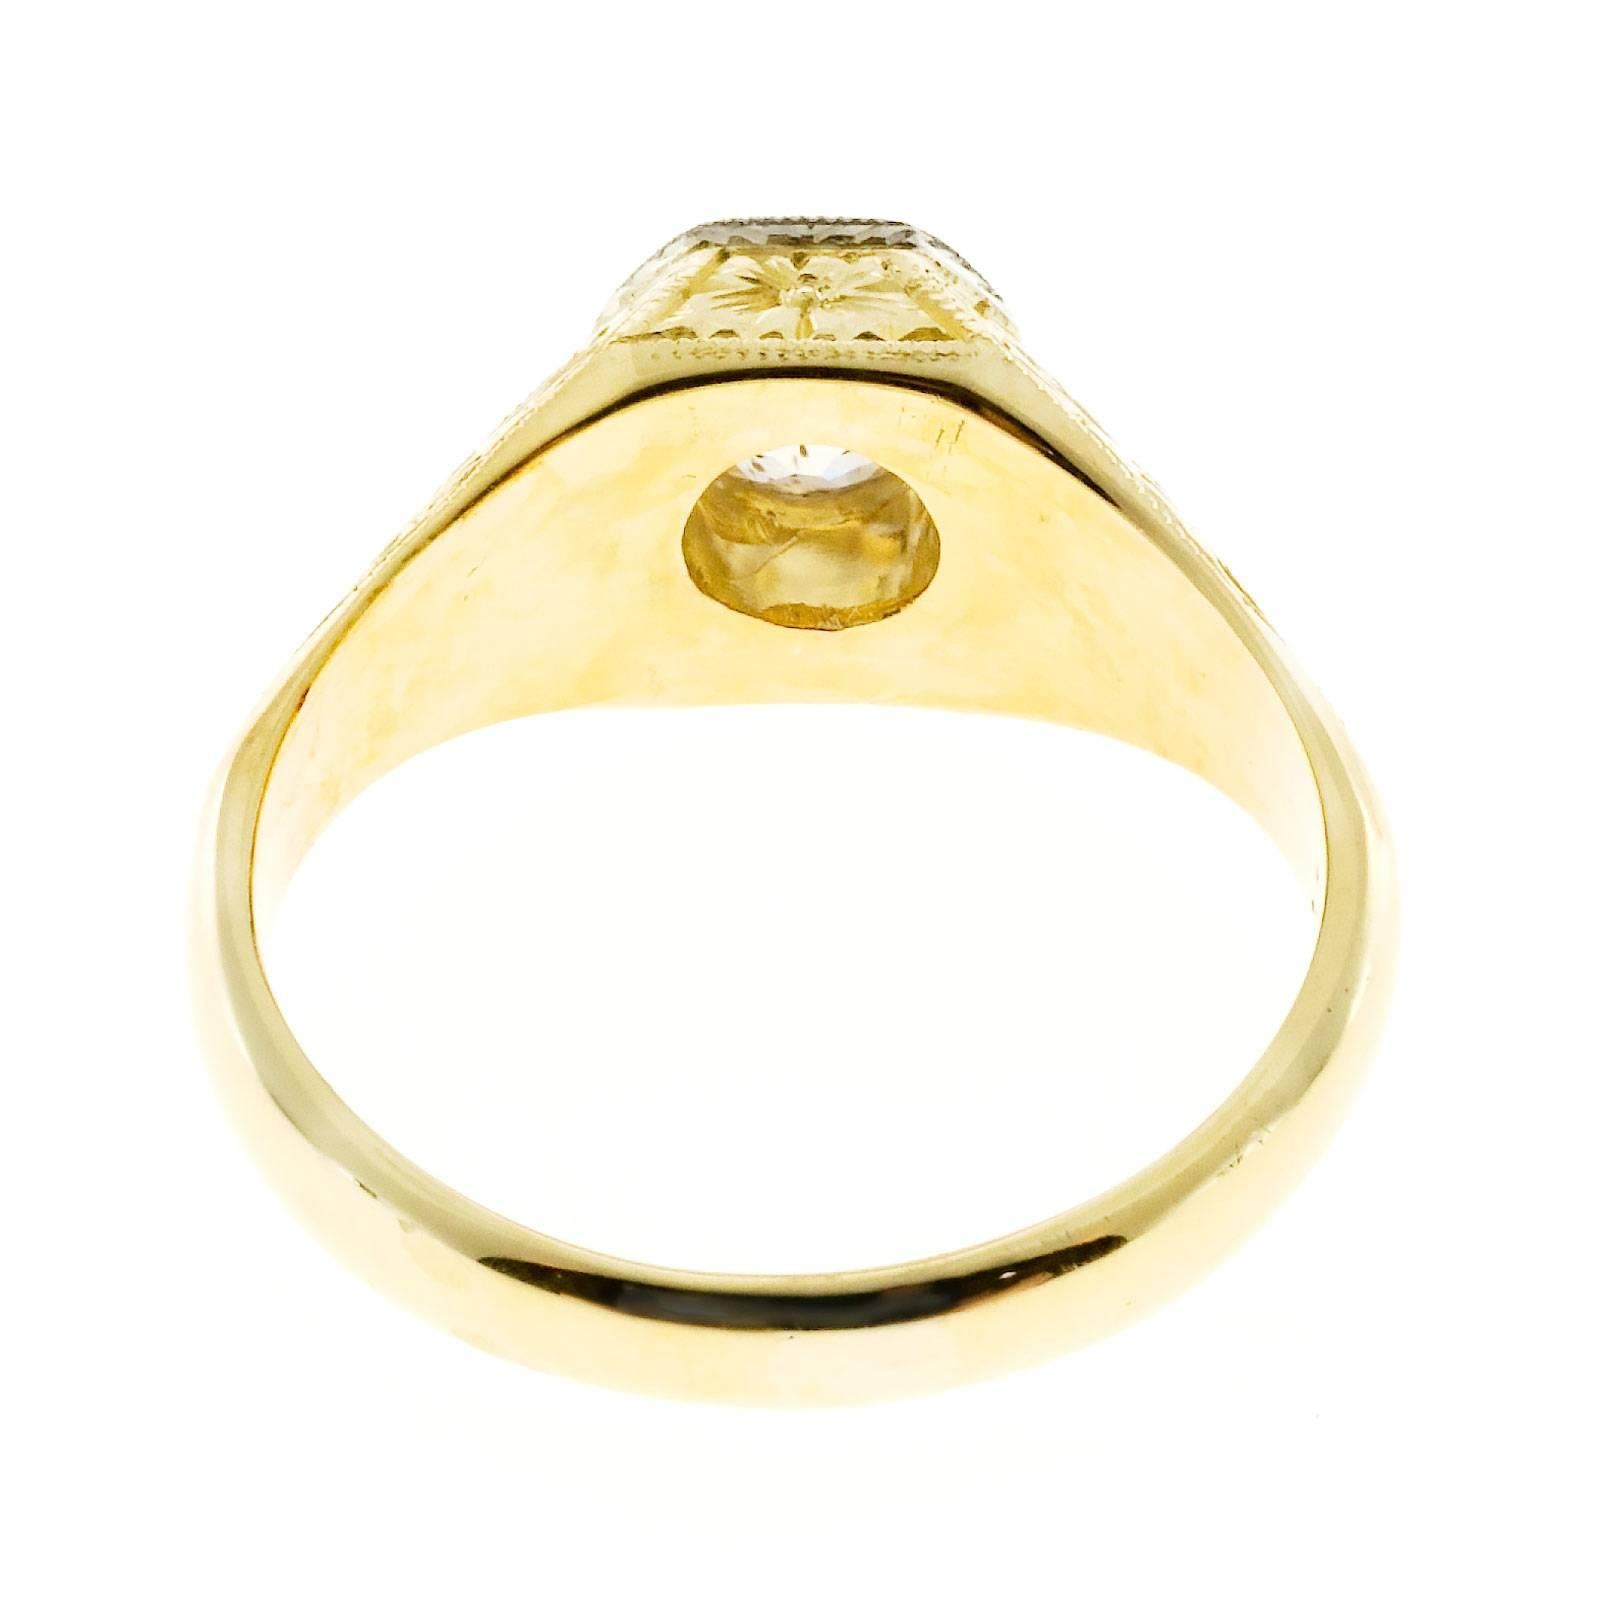 Handmade Men’s Diamond Gold Engraved Ring 2